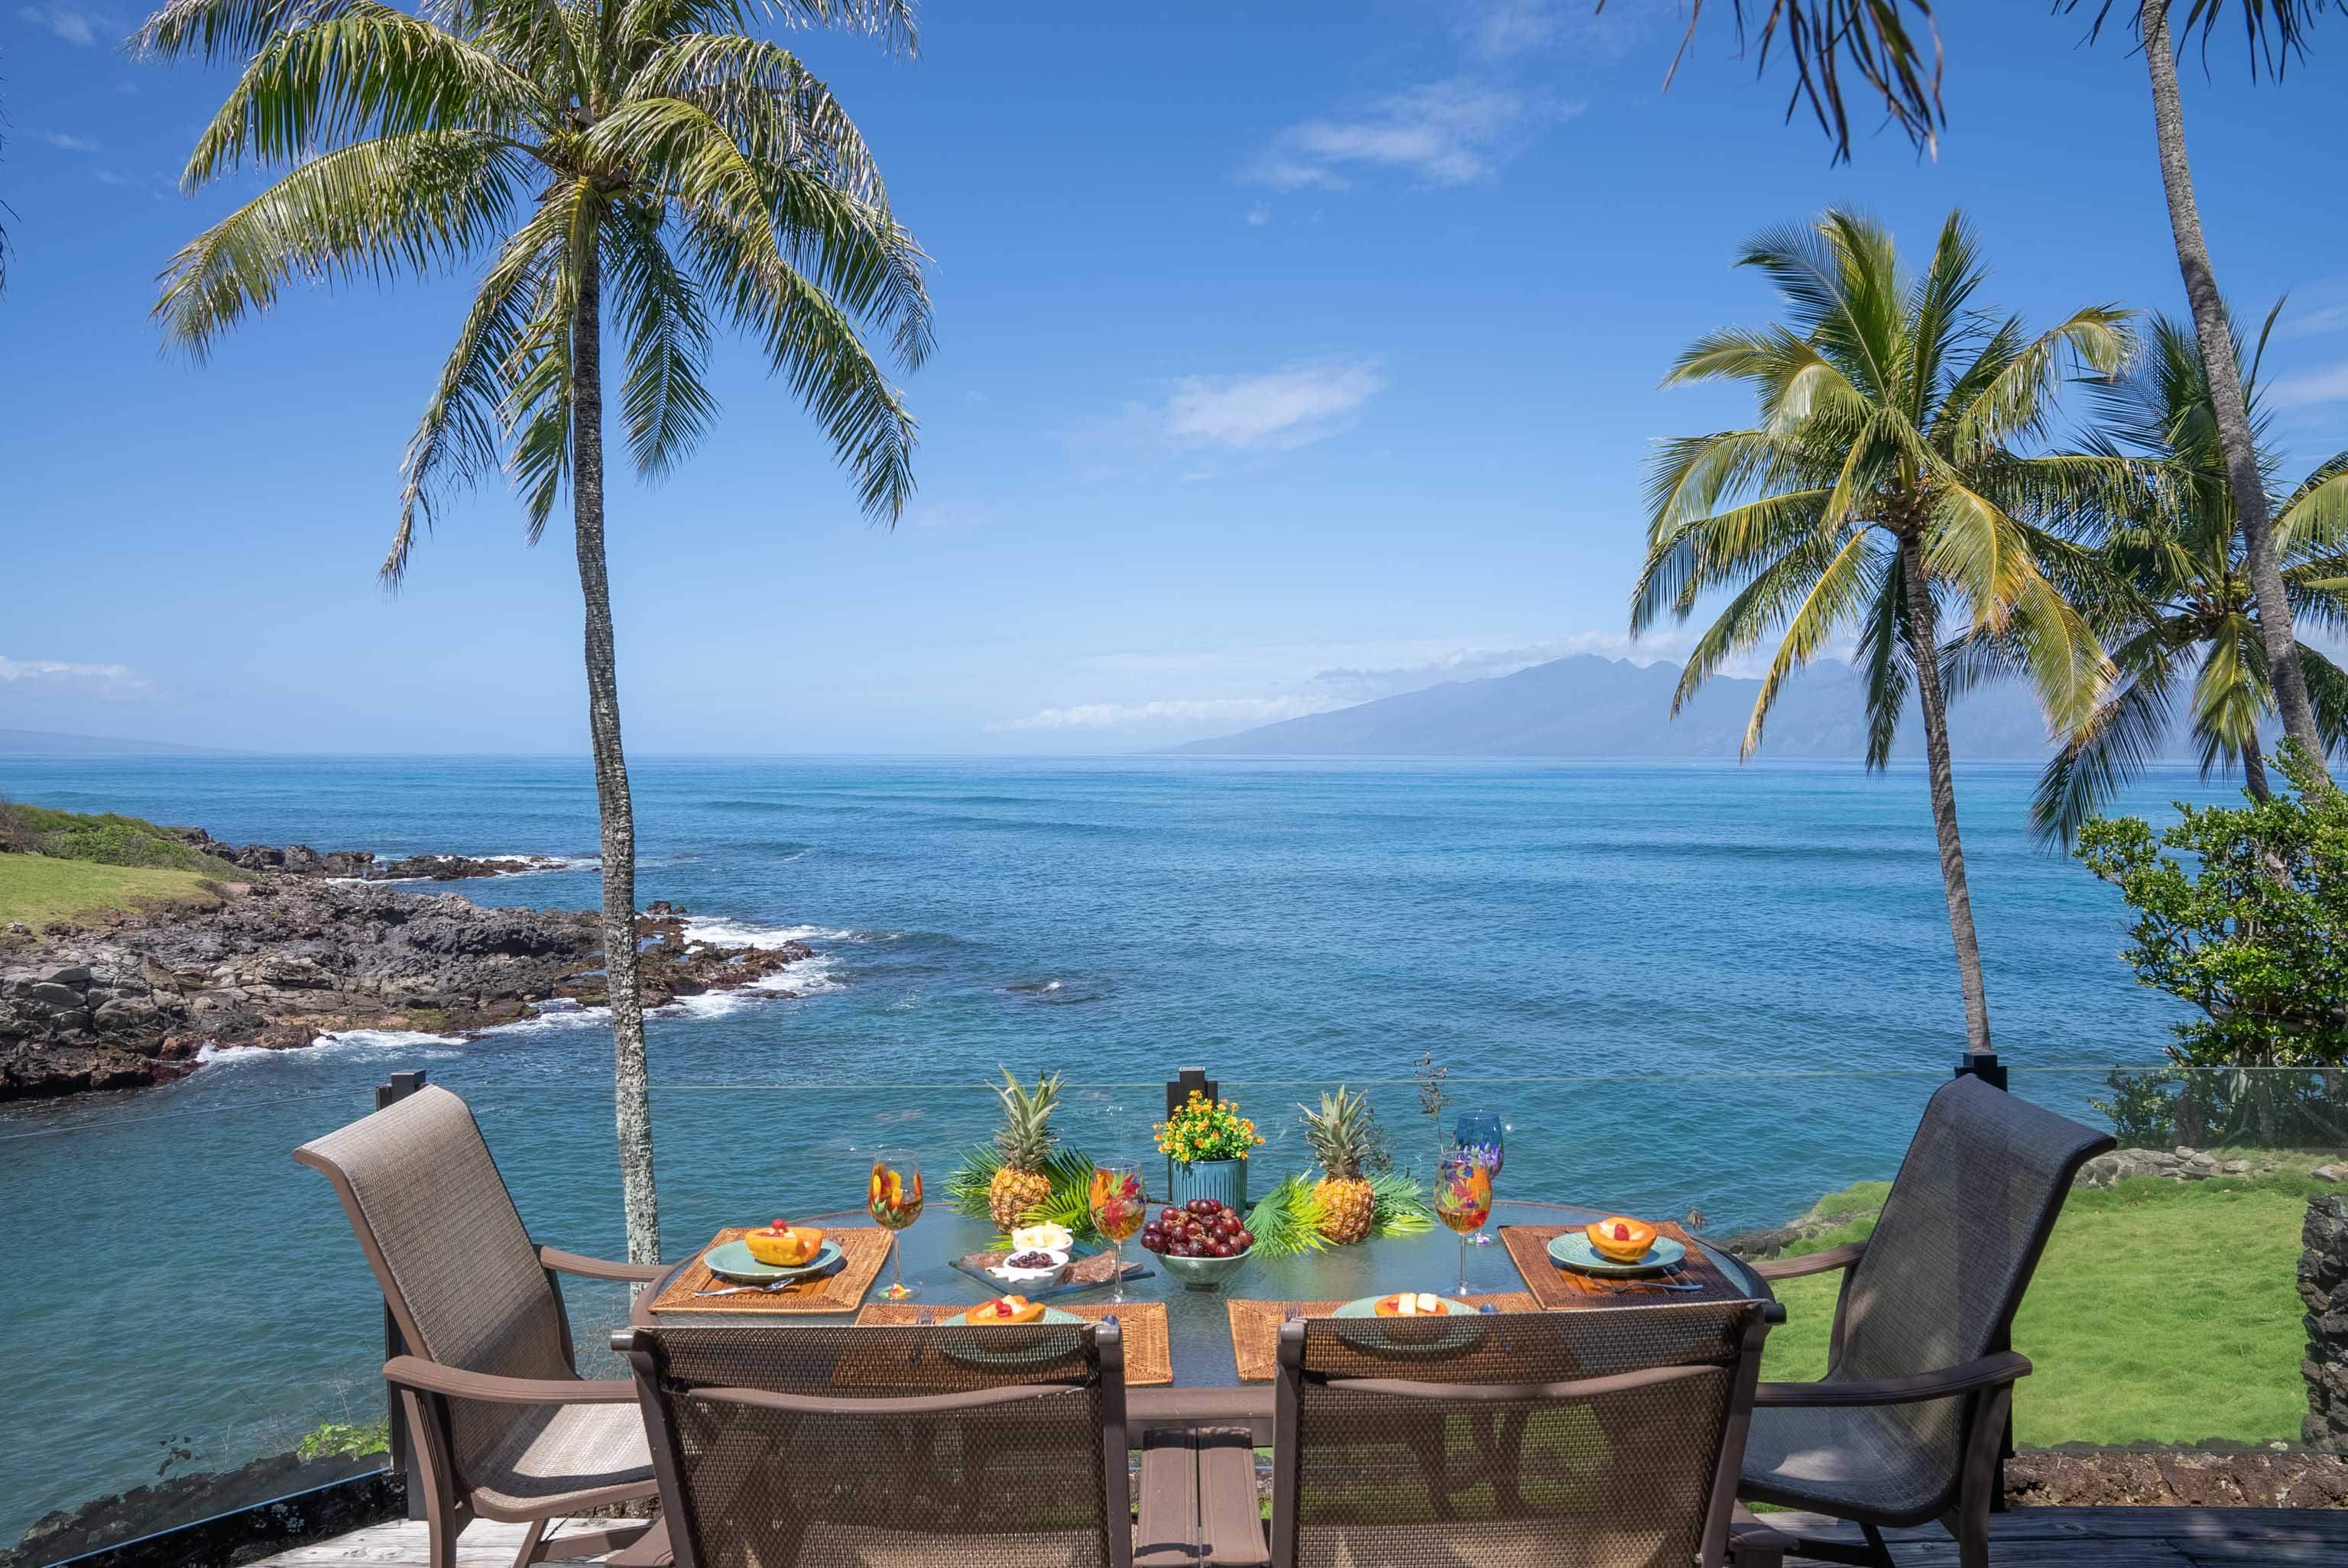 Lahaina: Bạn đang tò mò về cuộc sống trên đảo Maui của Hawaii? Lahaina là nơi tuyệt vời để khám phá! Với bãi biển đẹp như tranh vẽ, đường phố tràn ngập những cửa hàng, quán ăn và lễ hội văn hóa náo nhiệt, Lahaina là thị trấn nhỏ xinh đầy quyến rũ. Hãy xem hình ảnh để tìm hiểu thêm và chuẩn bị cho chuyến đi của mình! 